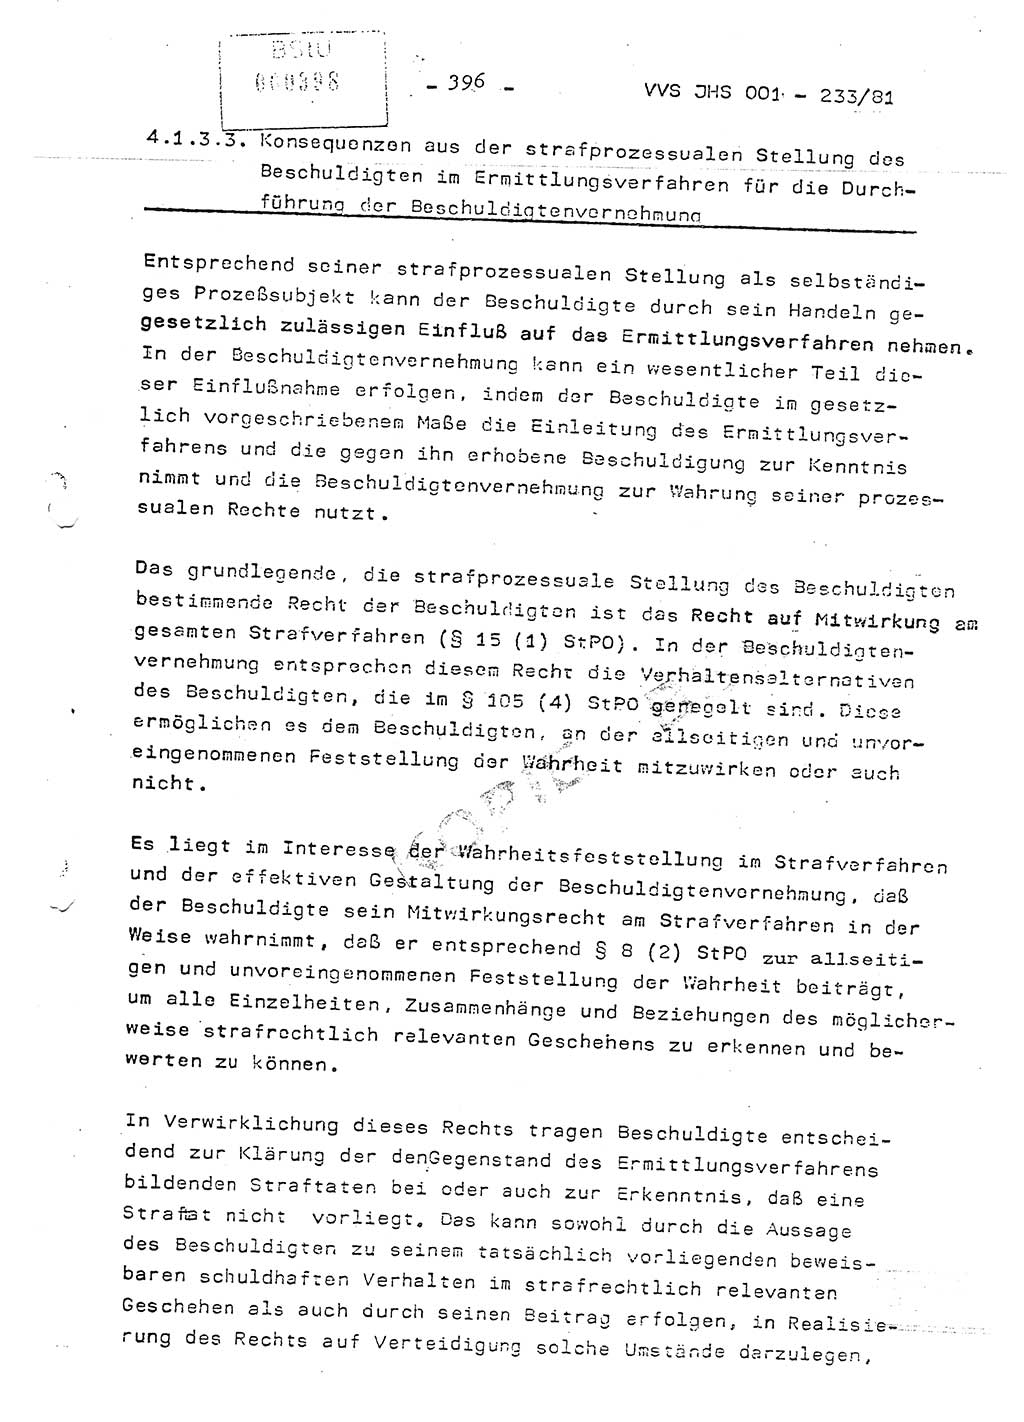 Dissertation Oberstleutnant Horst Zank (JHS), Oberstleutnant Dr. Karl-Heinz Knoblauch (JHS), Oberstleutnant Gustav-Adolf Kowalewski (HA Ⅸ), Oberstleutnant Wolfgang Plötner (HA Ⅸ), Ministerium für Staatssicherheit (MfS) [Deutsche Demokratische Republik (DDR)], Juristische Hochschule (JHS), Vertrauliche Verschlußsache (VVS) o001-233/81, Potsdam 1981, Blatt 396 (Diss. MfS DDR JHS VVS o001-233/81 1981, Bl. 396)